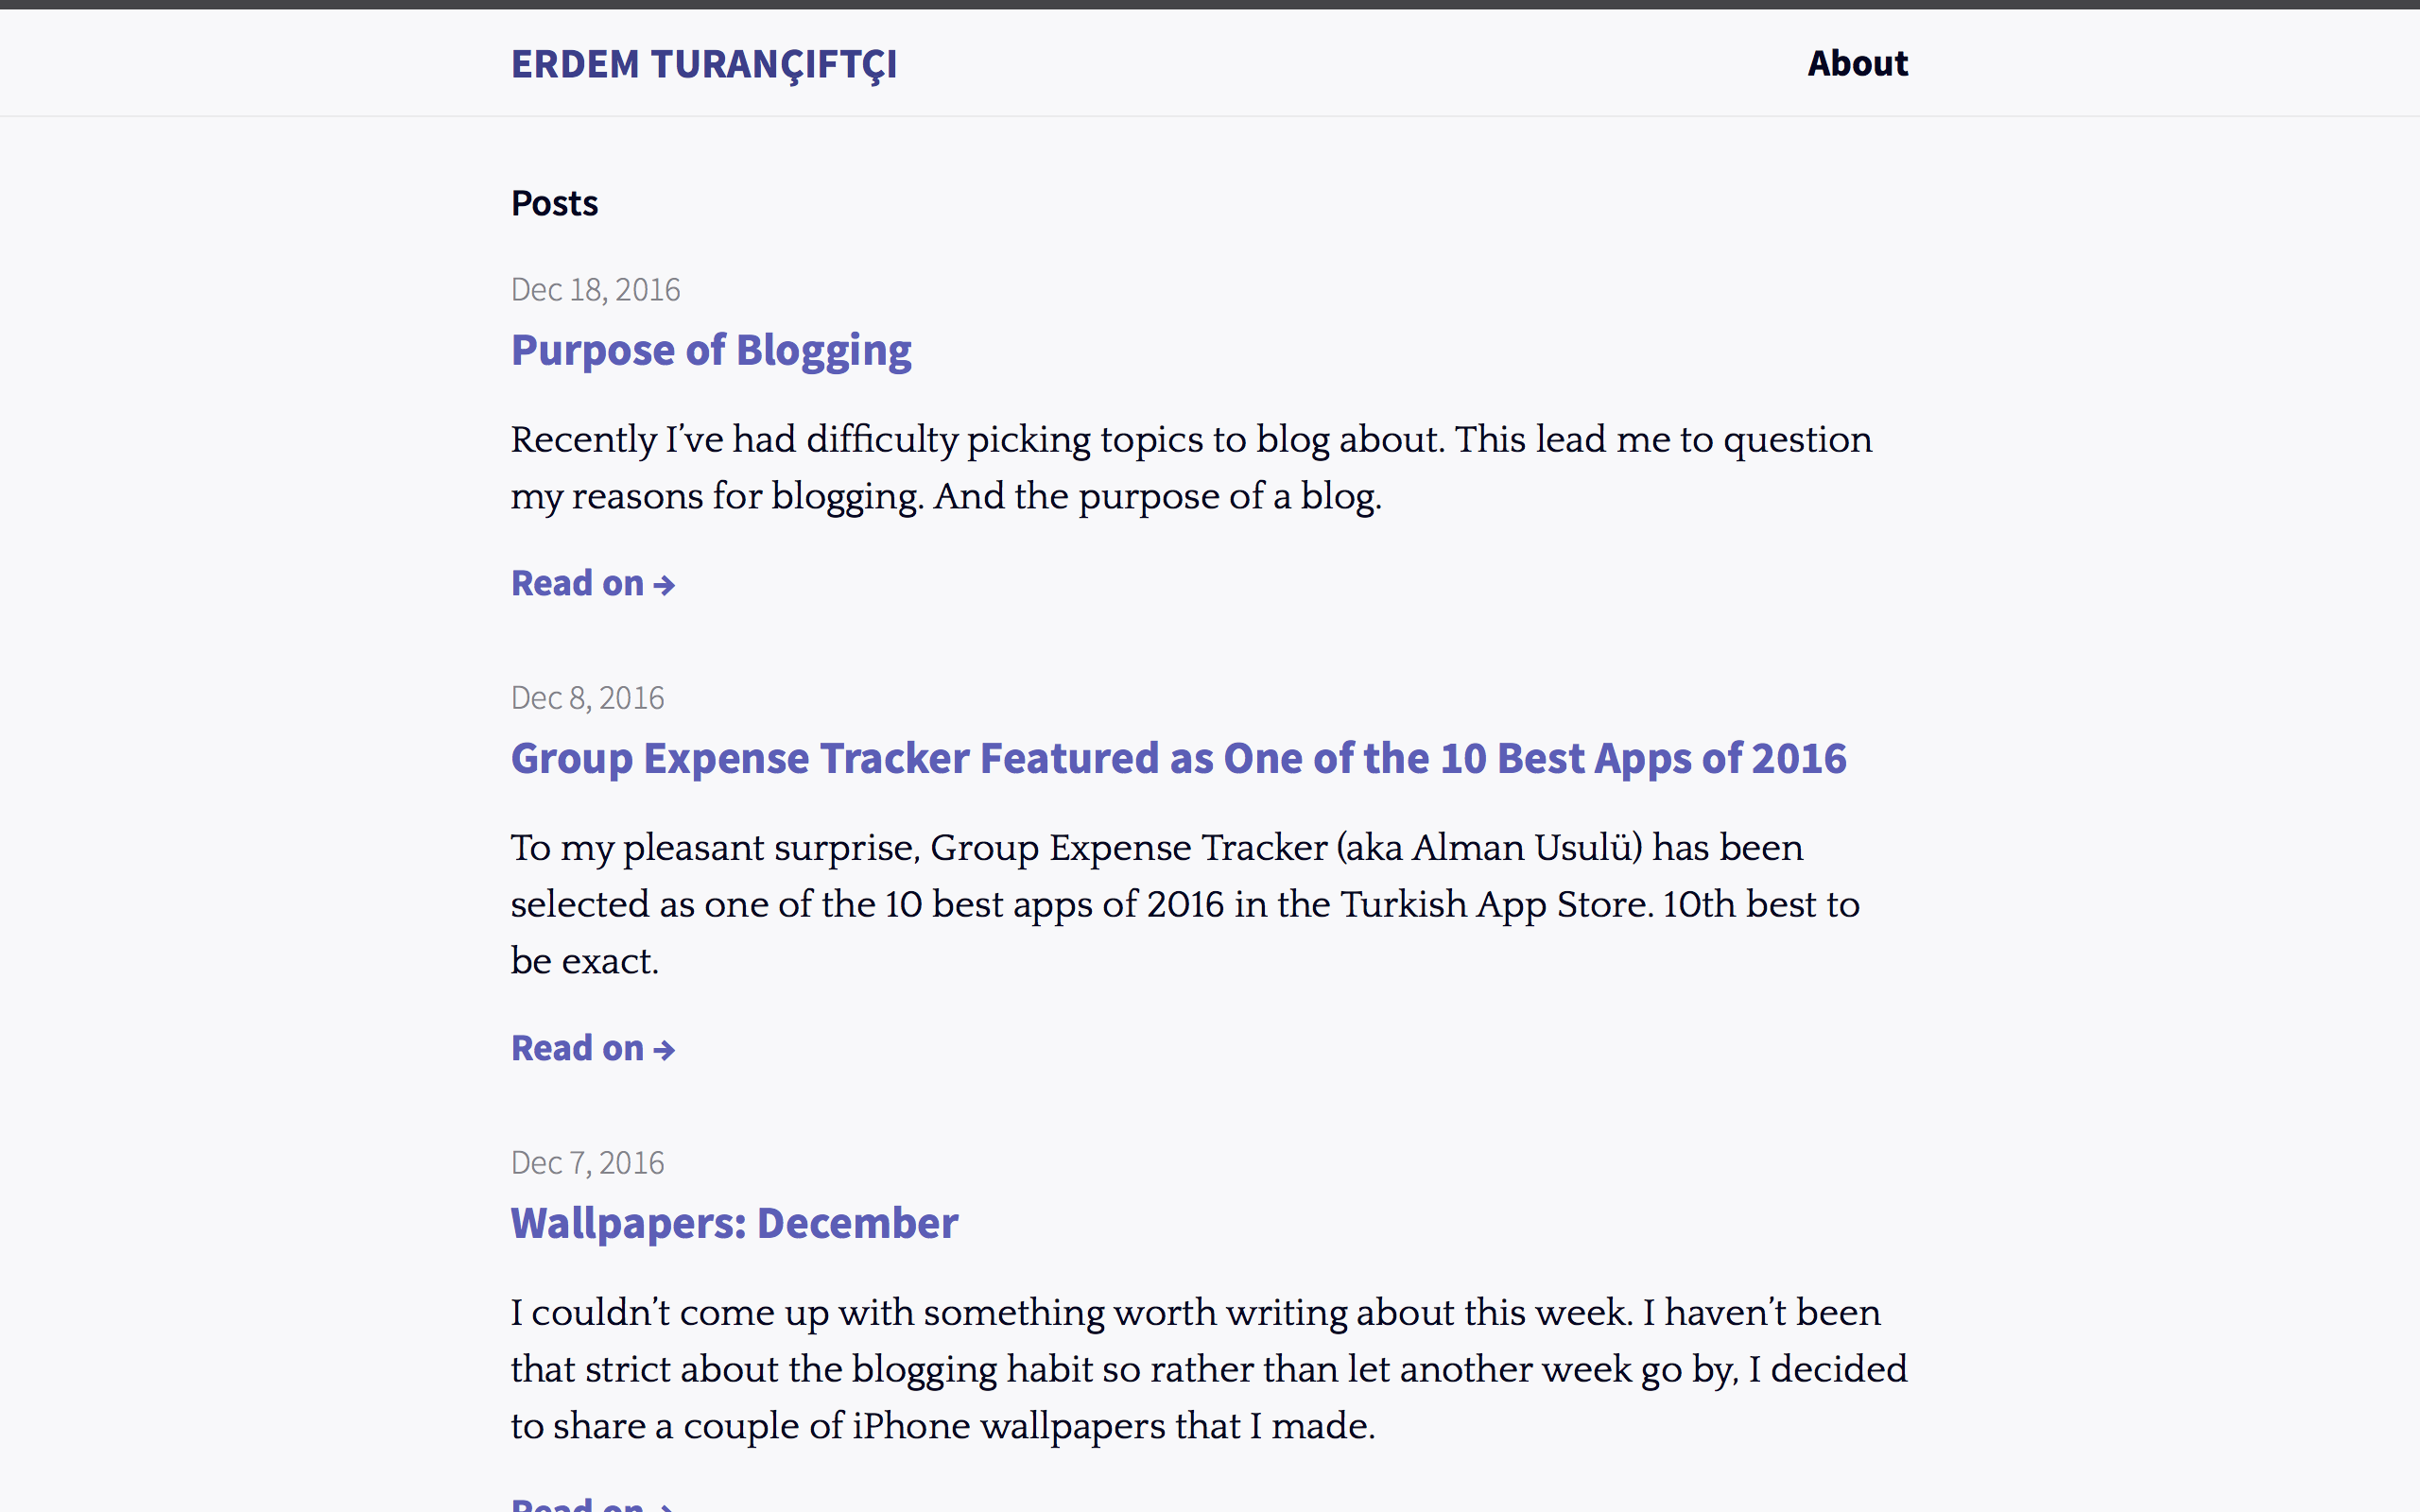 erdemtu.com as of 2016 December